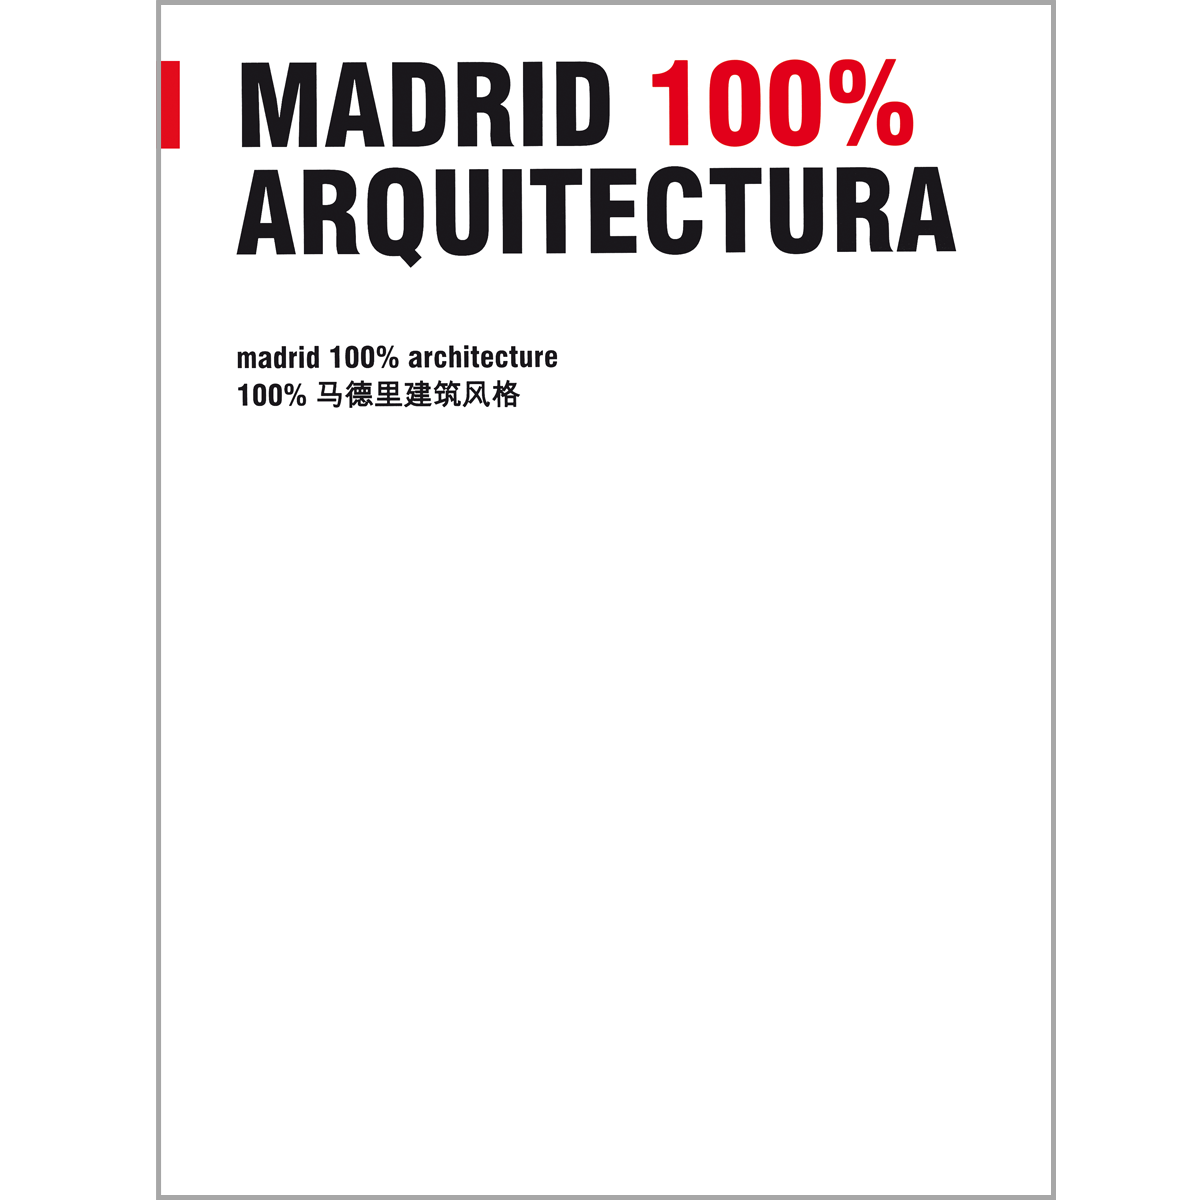 Madrid 100% Arquitectura